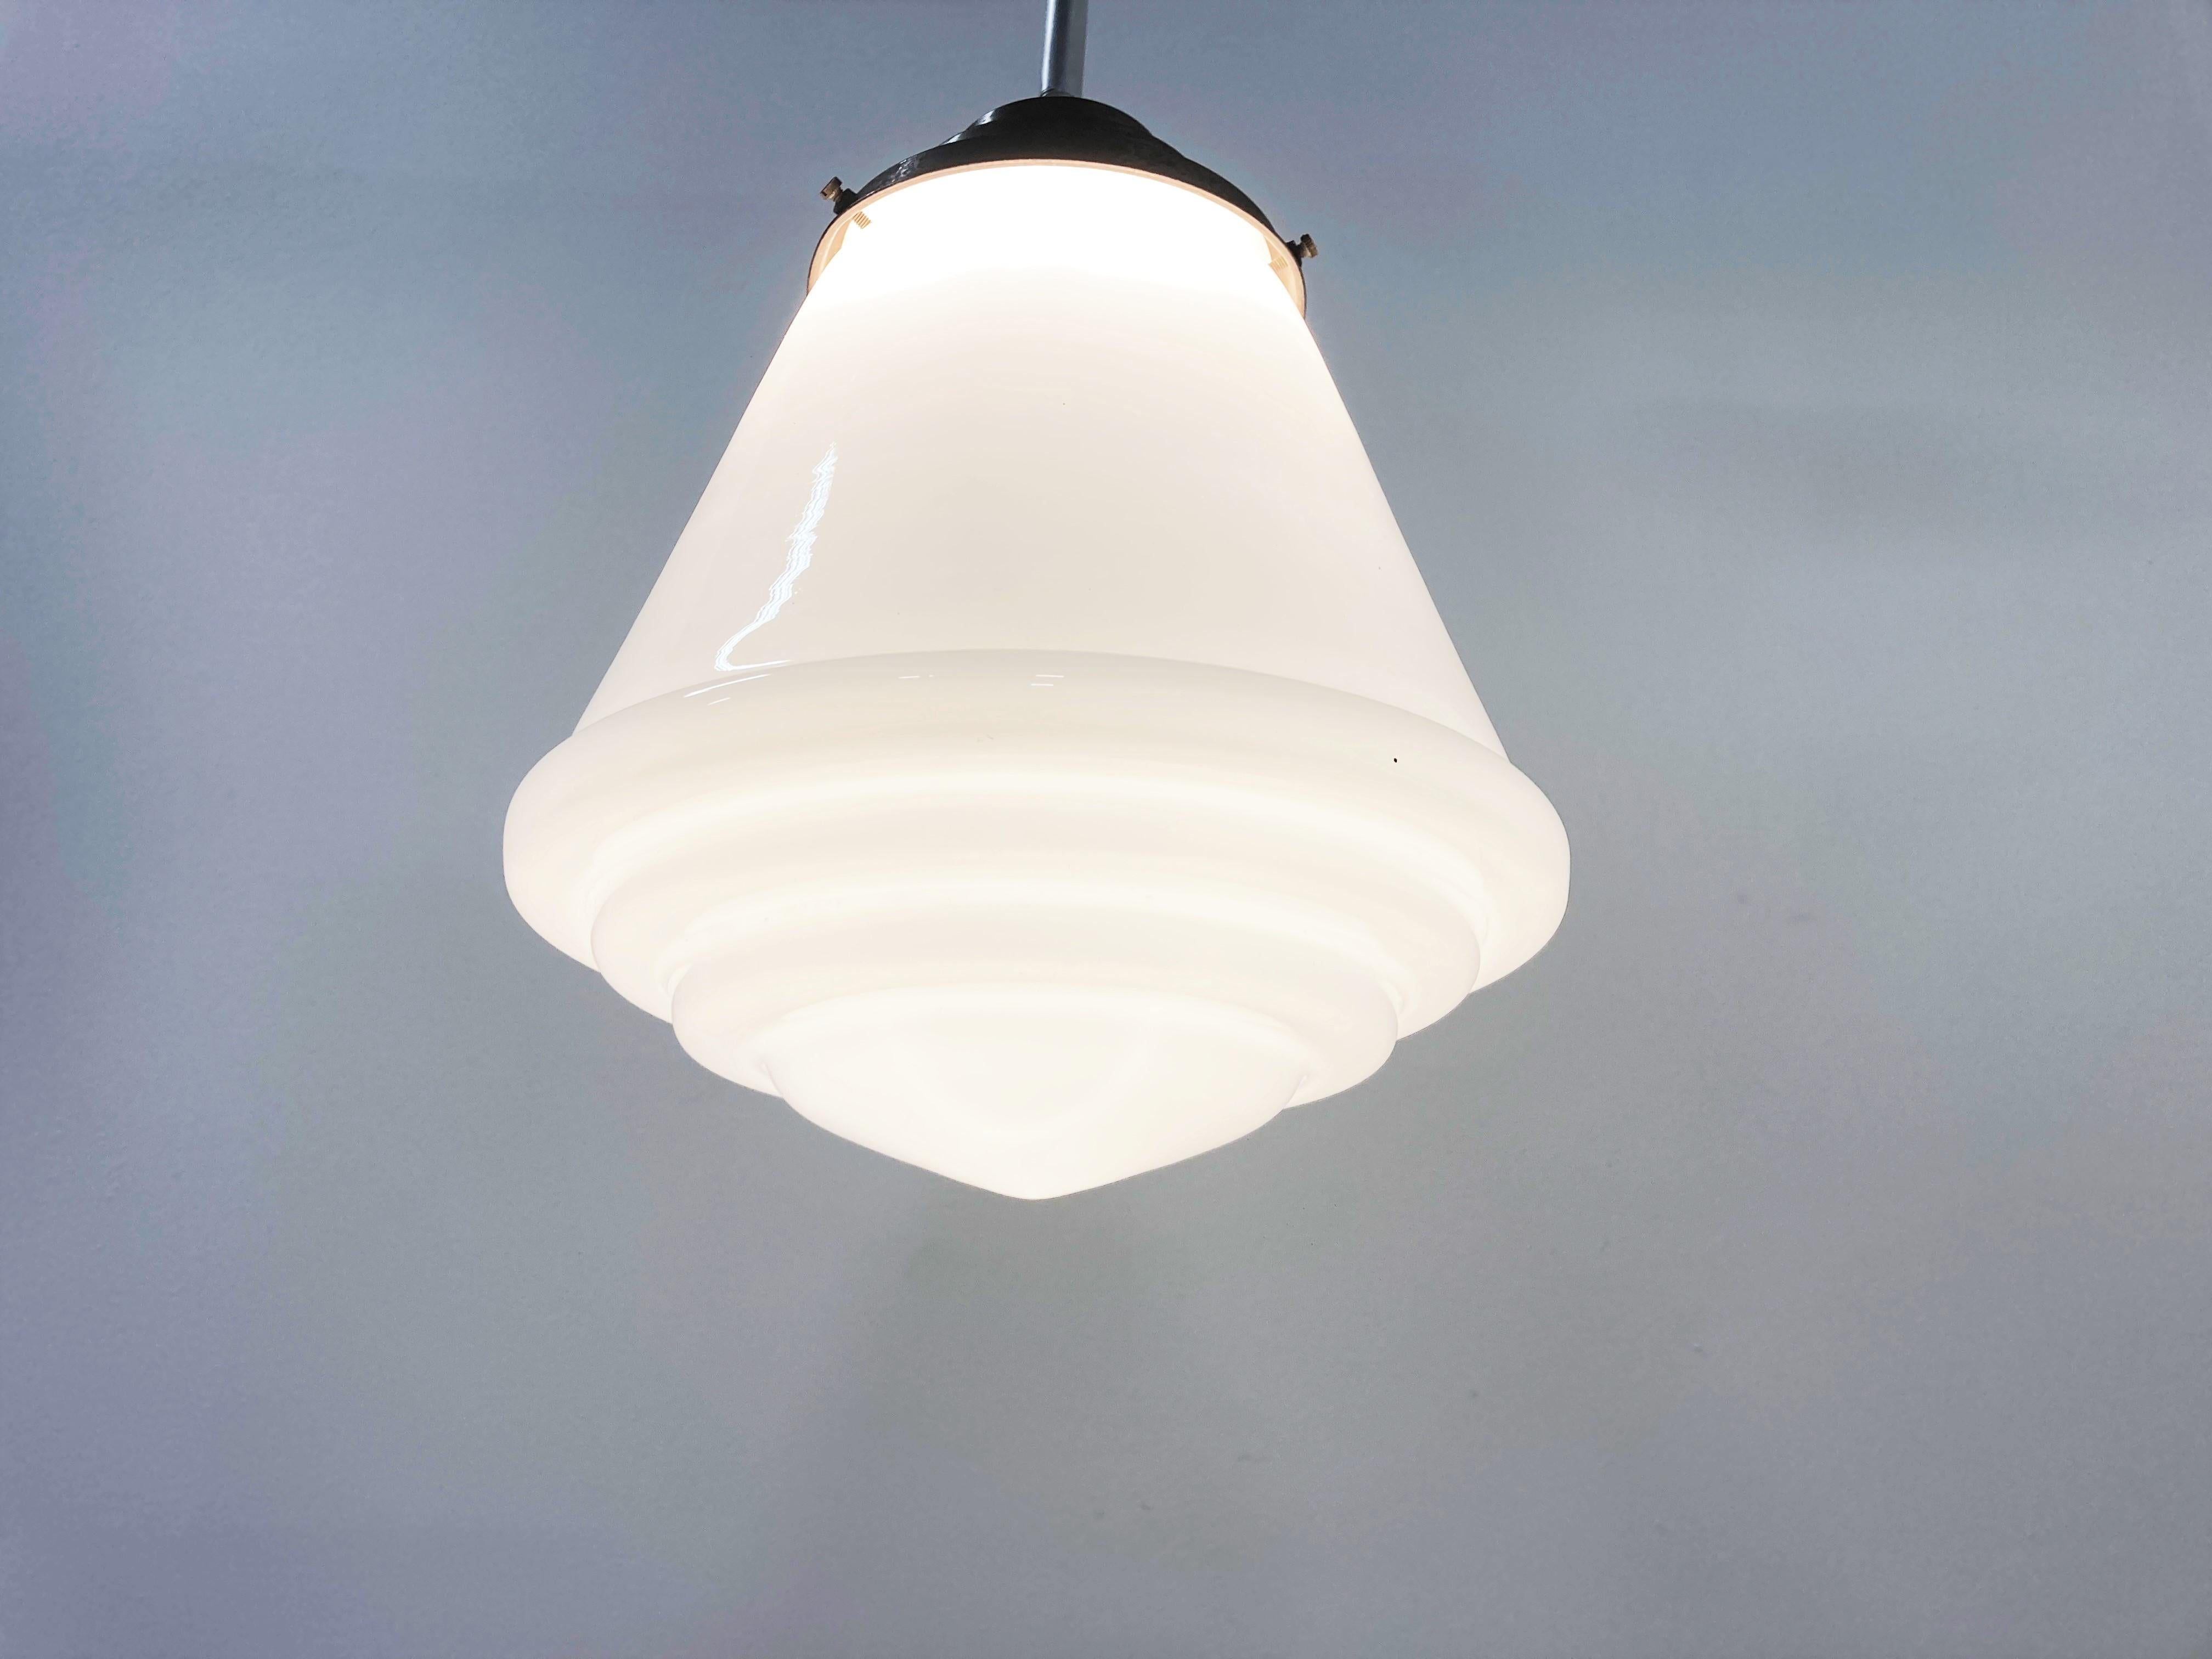 Antike konisch geformte Art-Deco-Hängeleuchte für den Flur.

Diese Lampe ist sehr typisch für die Art-Deco-Ära und wurde häufig in Fluren, Büros oder größeren öffentlichen Räumen aufgehängt.

Die Lampe hat die originale vernickelte Stange und